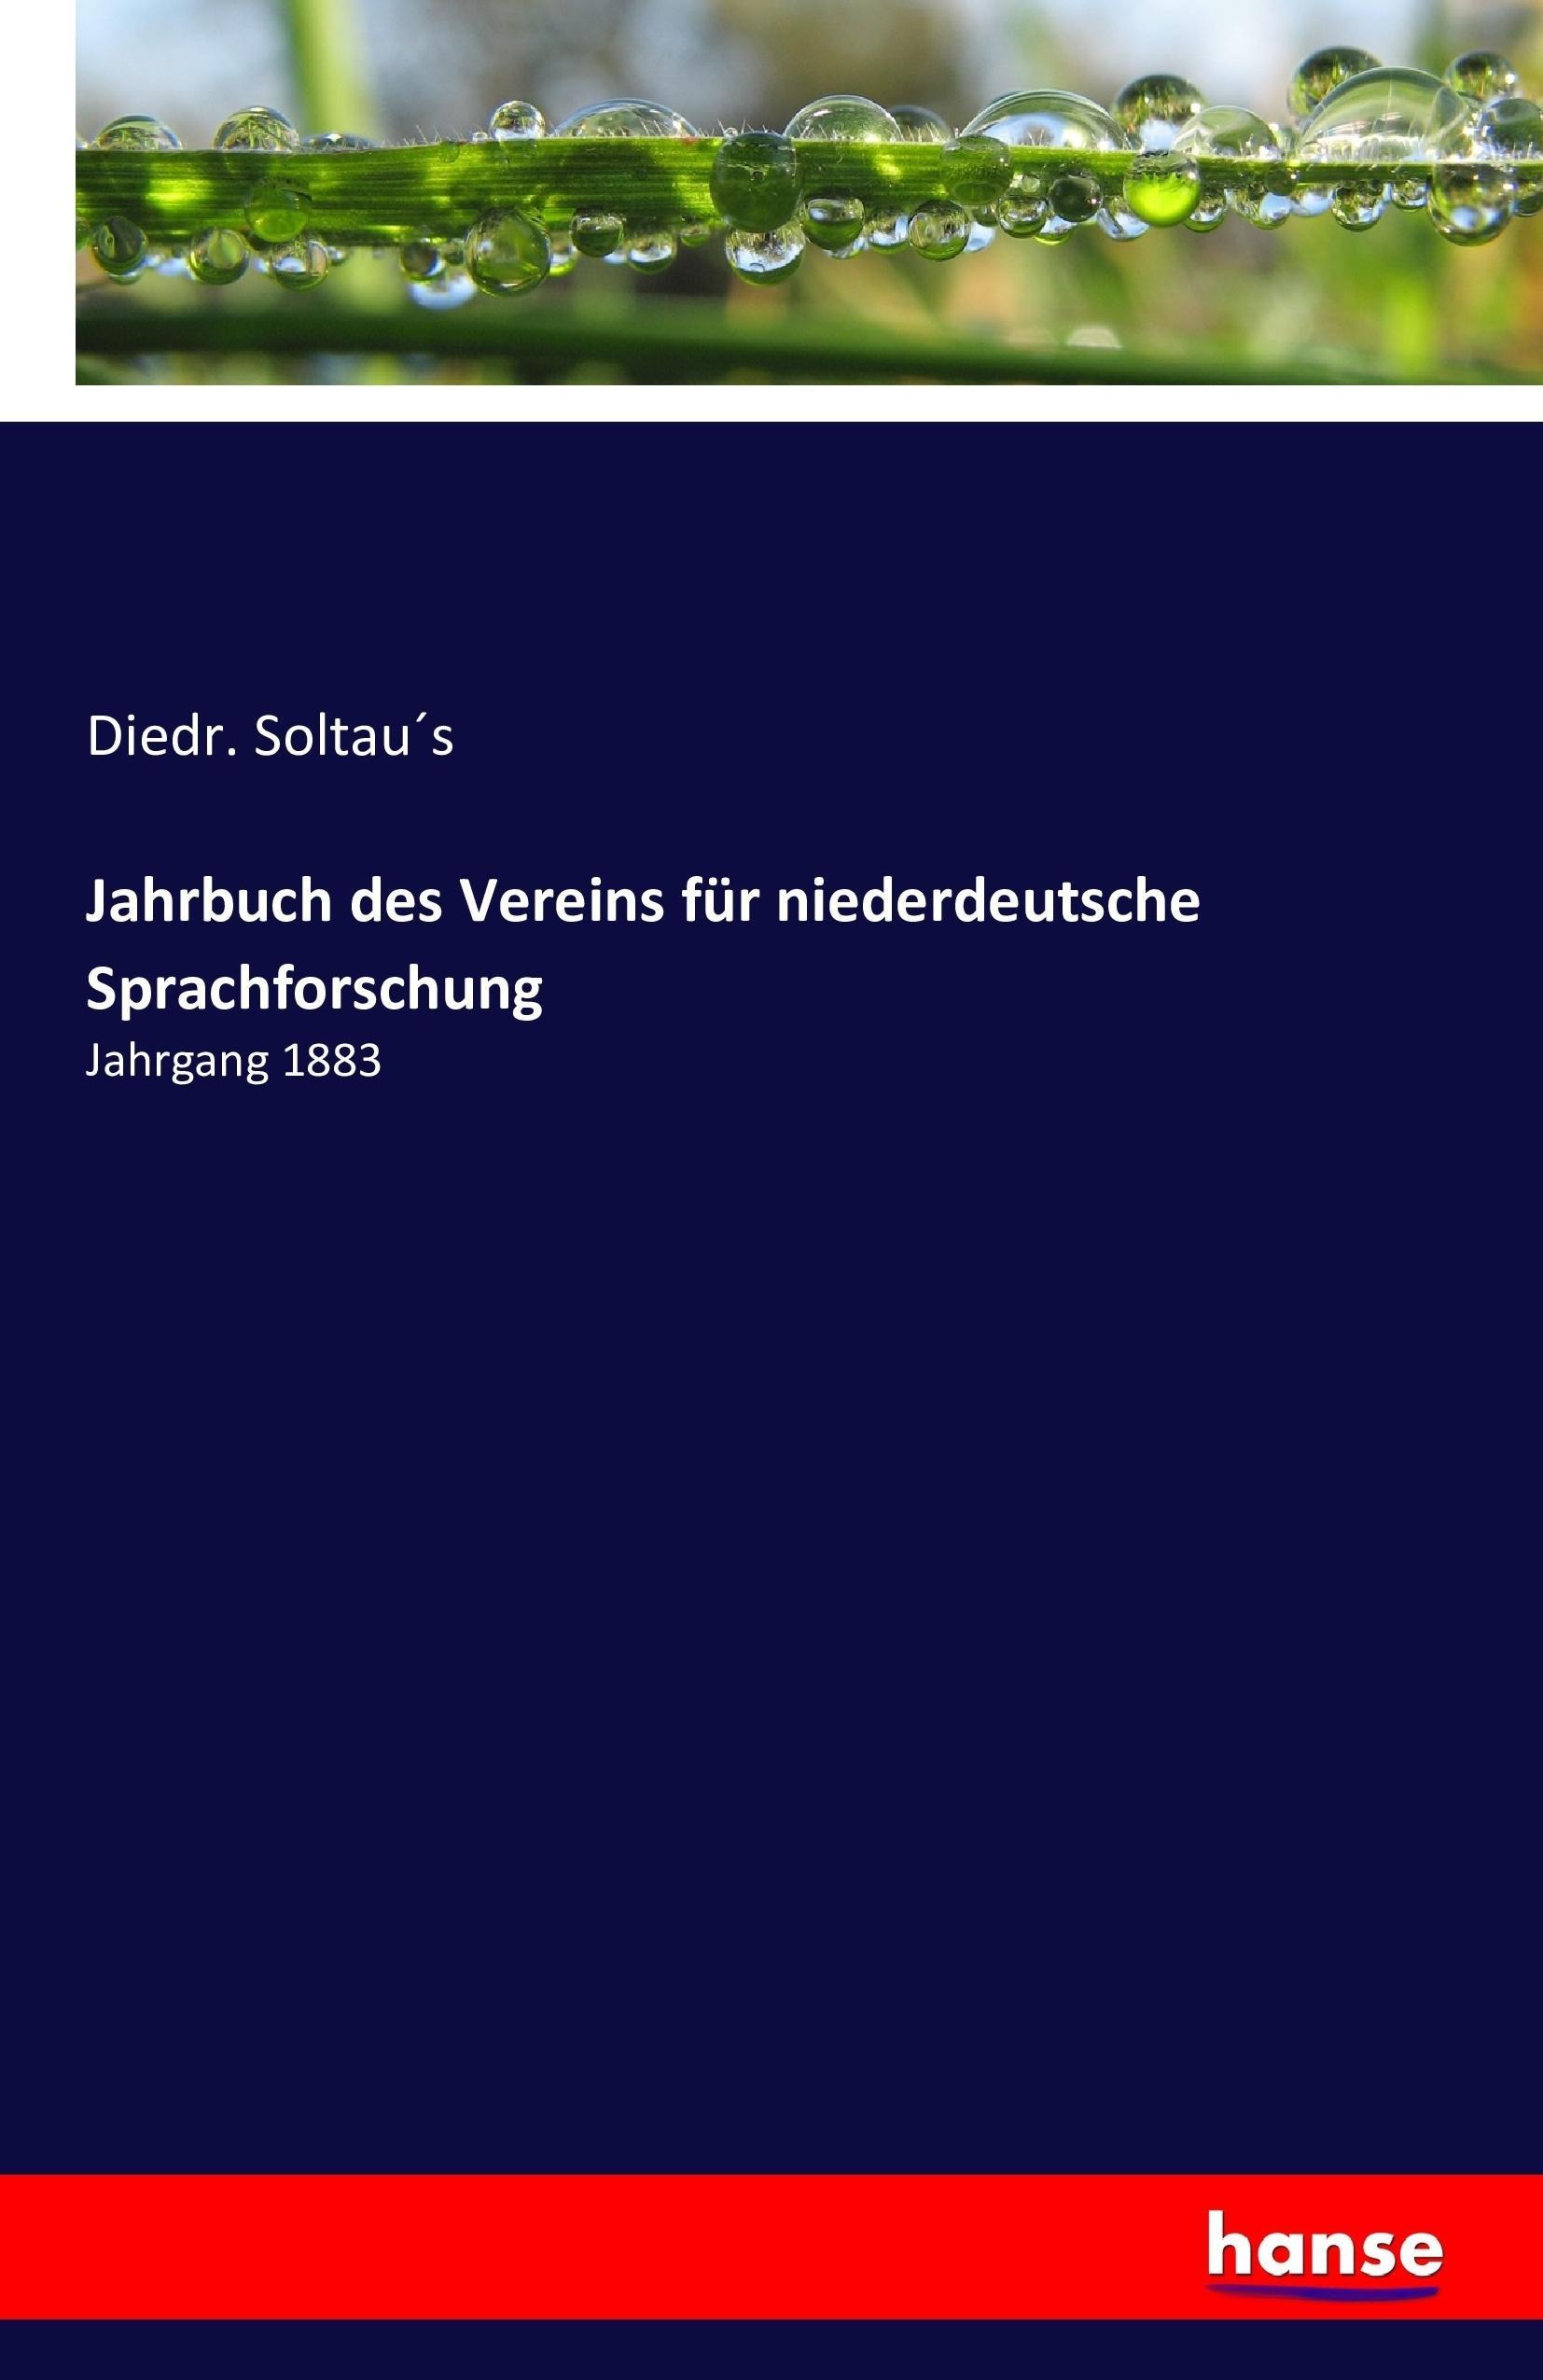 Jahrbuch des Vereins fuer niederdeutsche Sprachforschung